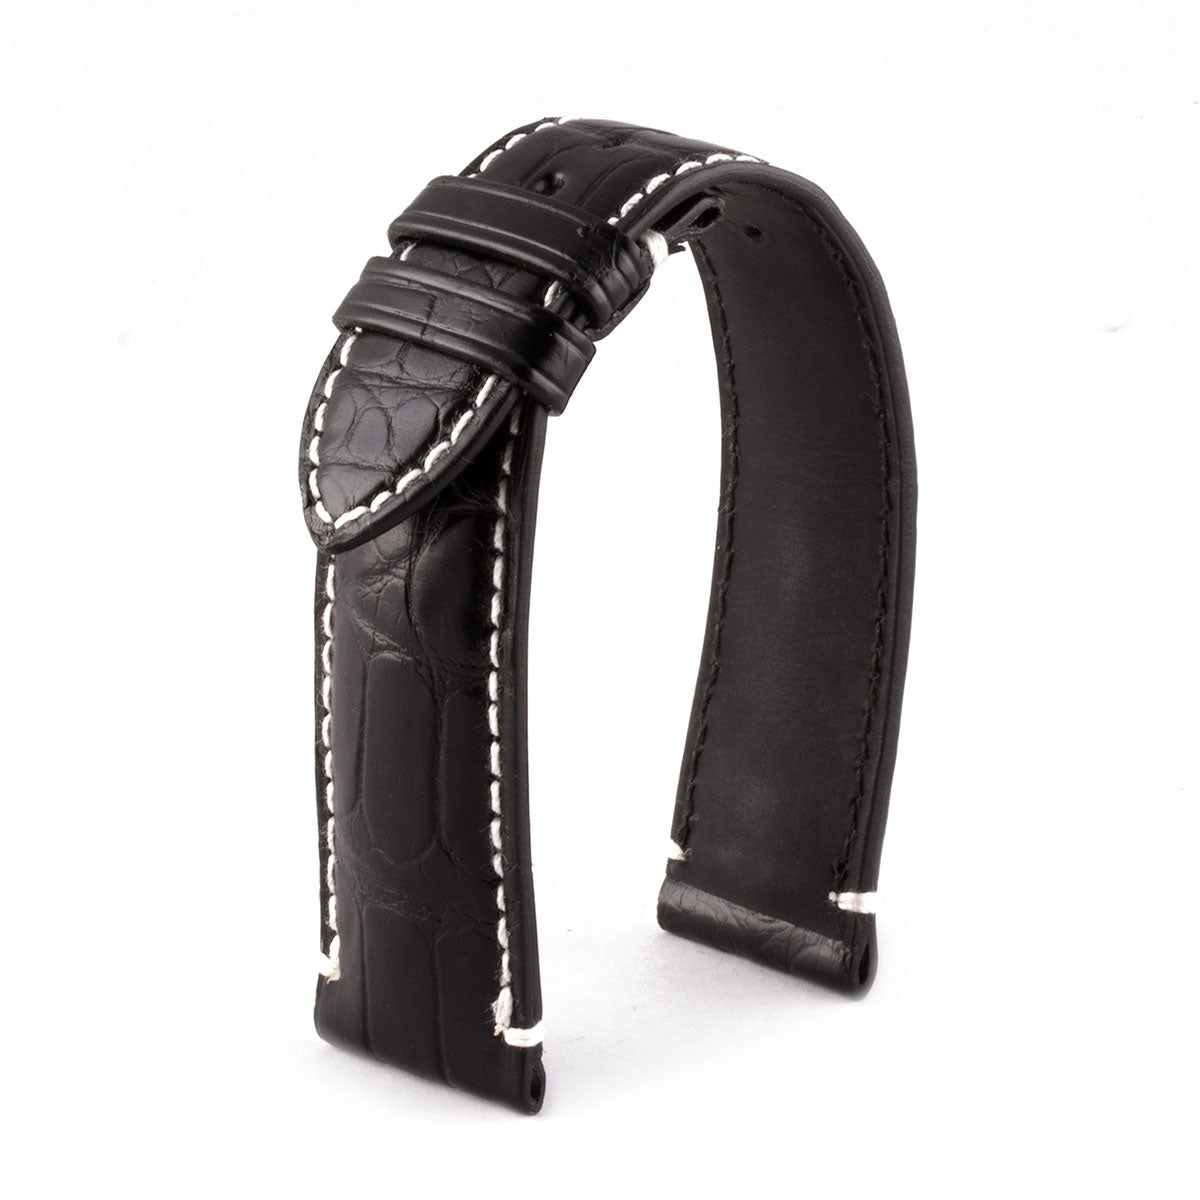 Bracelet Private Jet - Bracelet montre cuir - Alligator noir / blanc - watch band leather strap - ABP Concept -